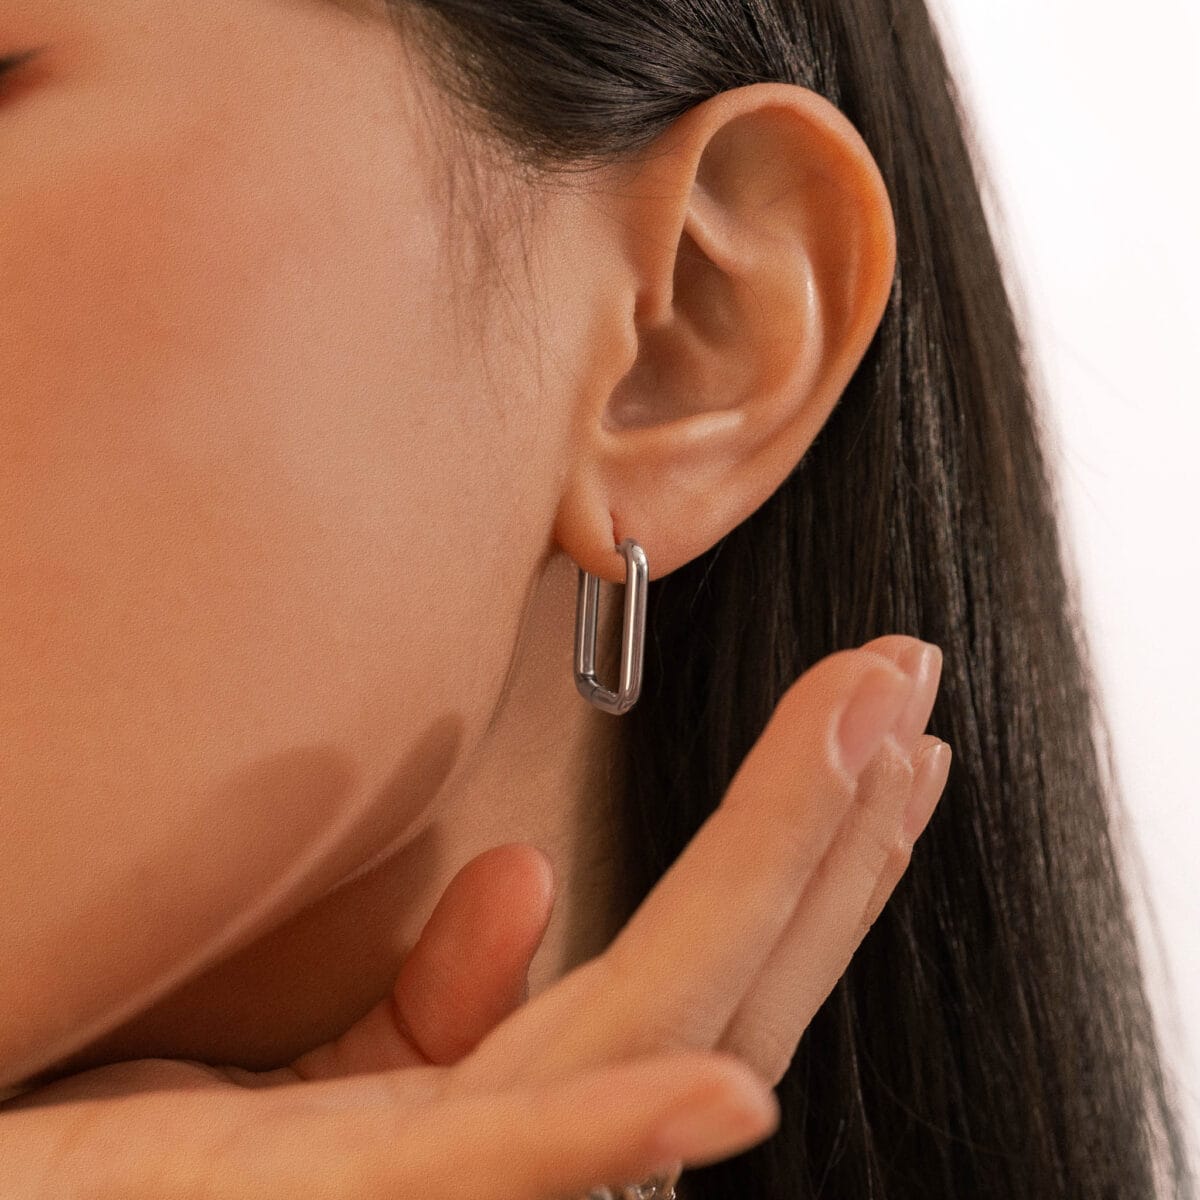 https://m.clubbella.co/product/silver-nova-earrings/ Silver Nova Earrings A01 (2)